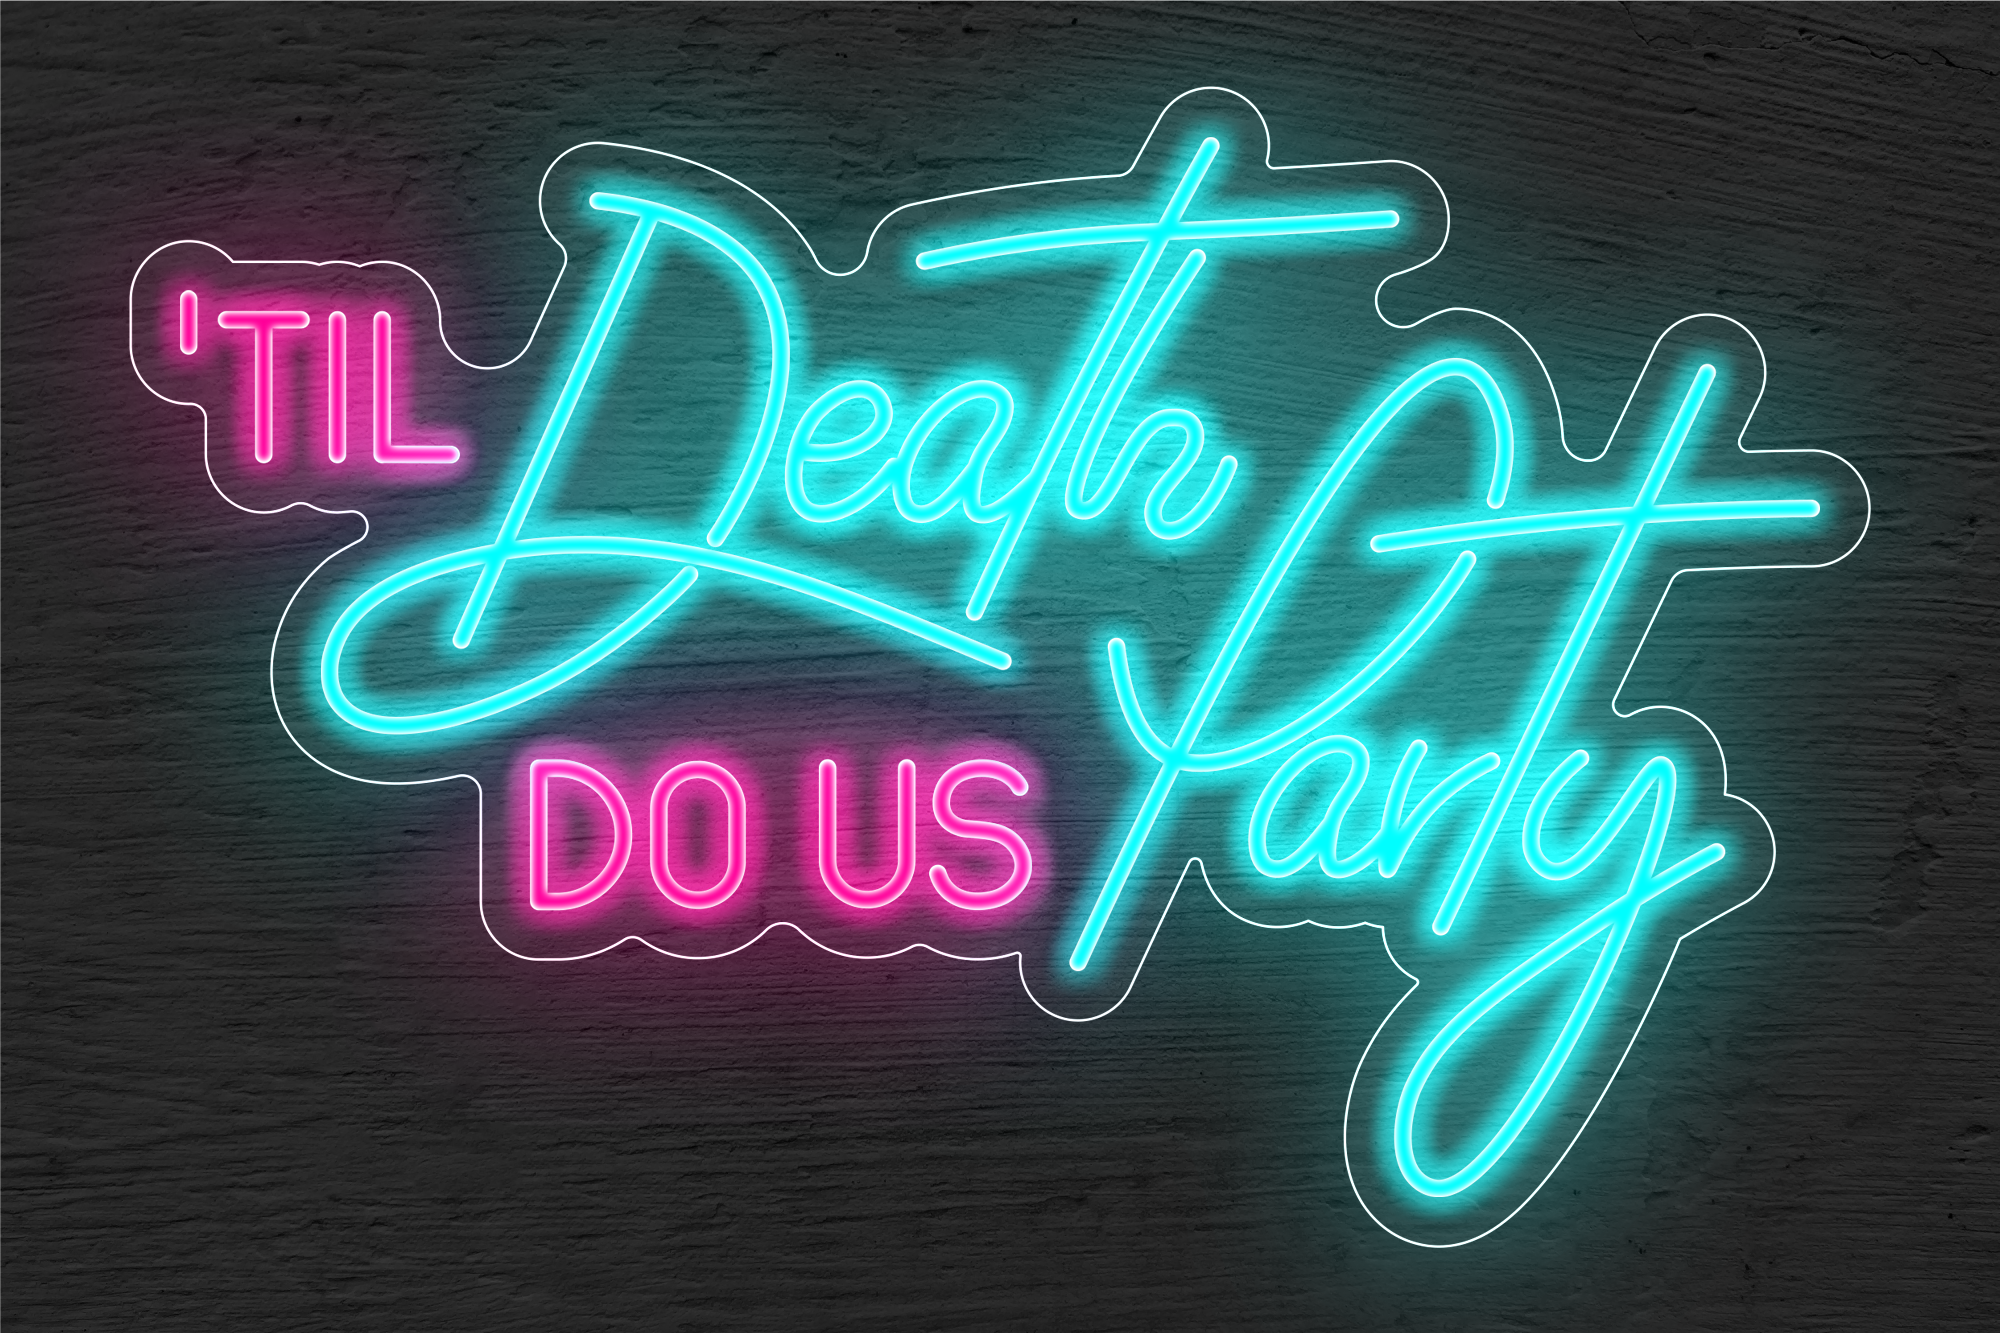 "'Til Death Do Us Party" LED Neon Sign